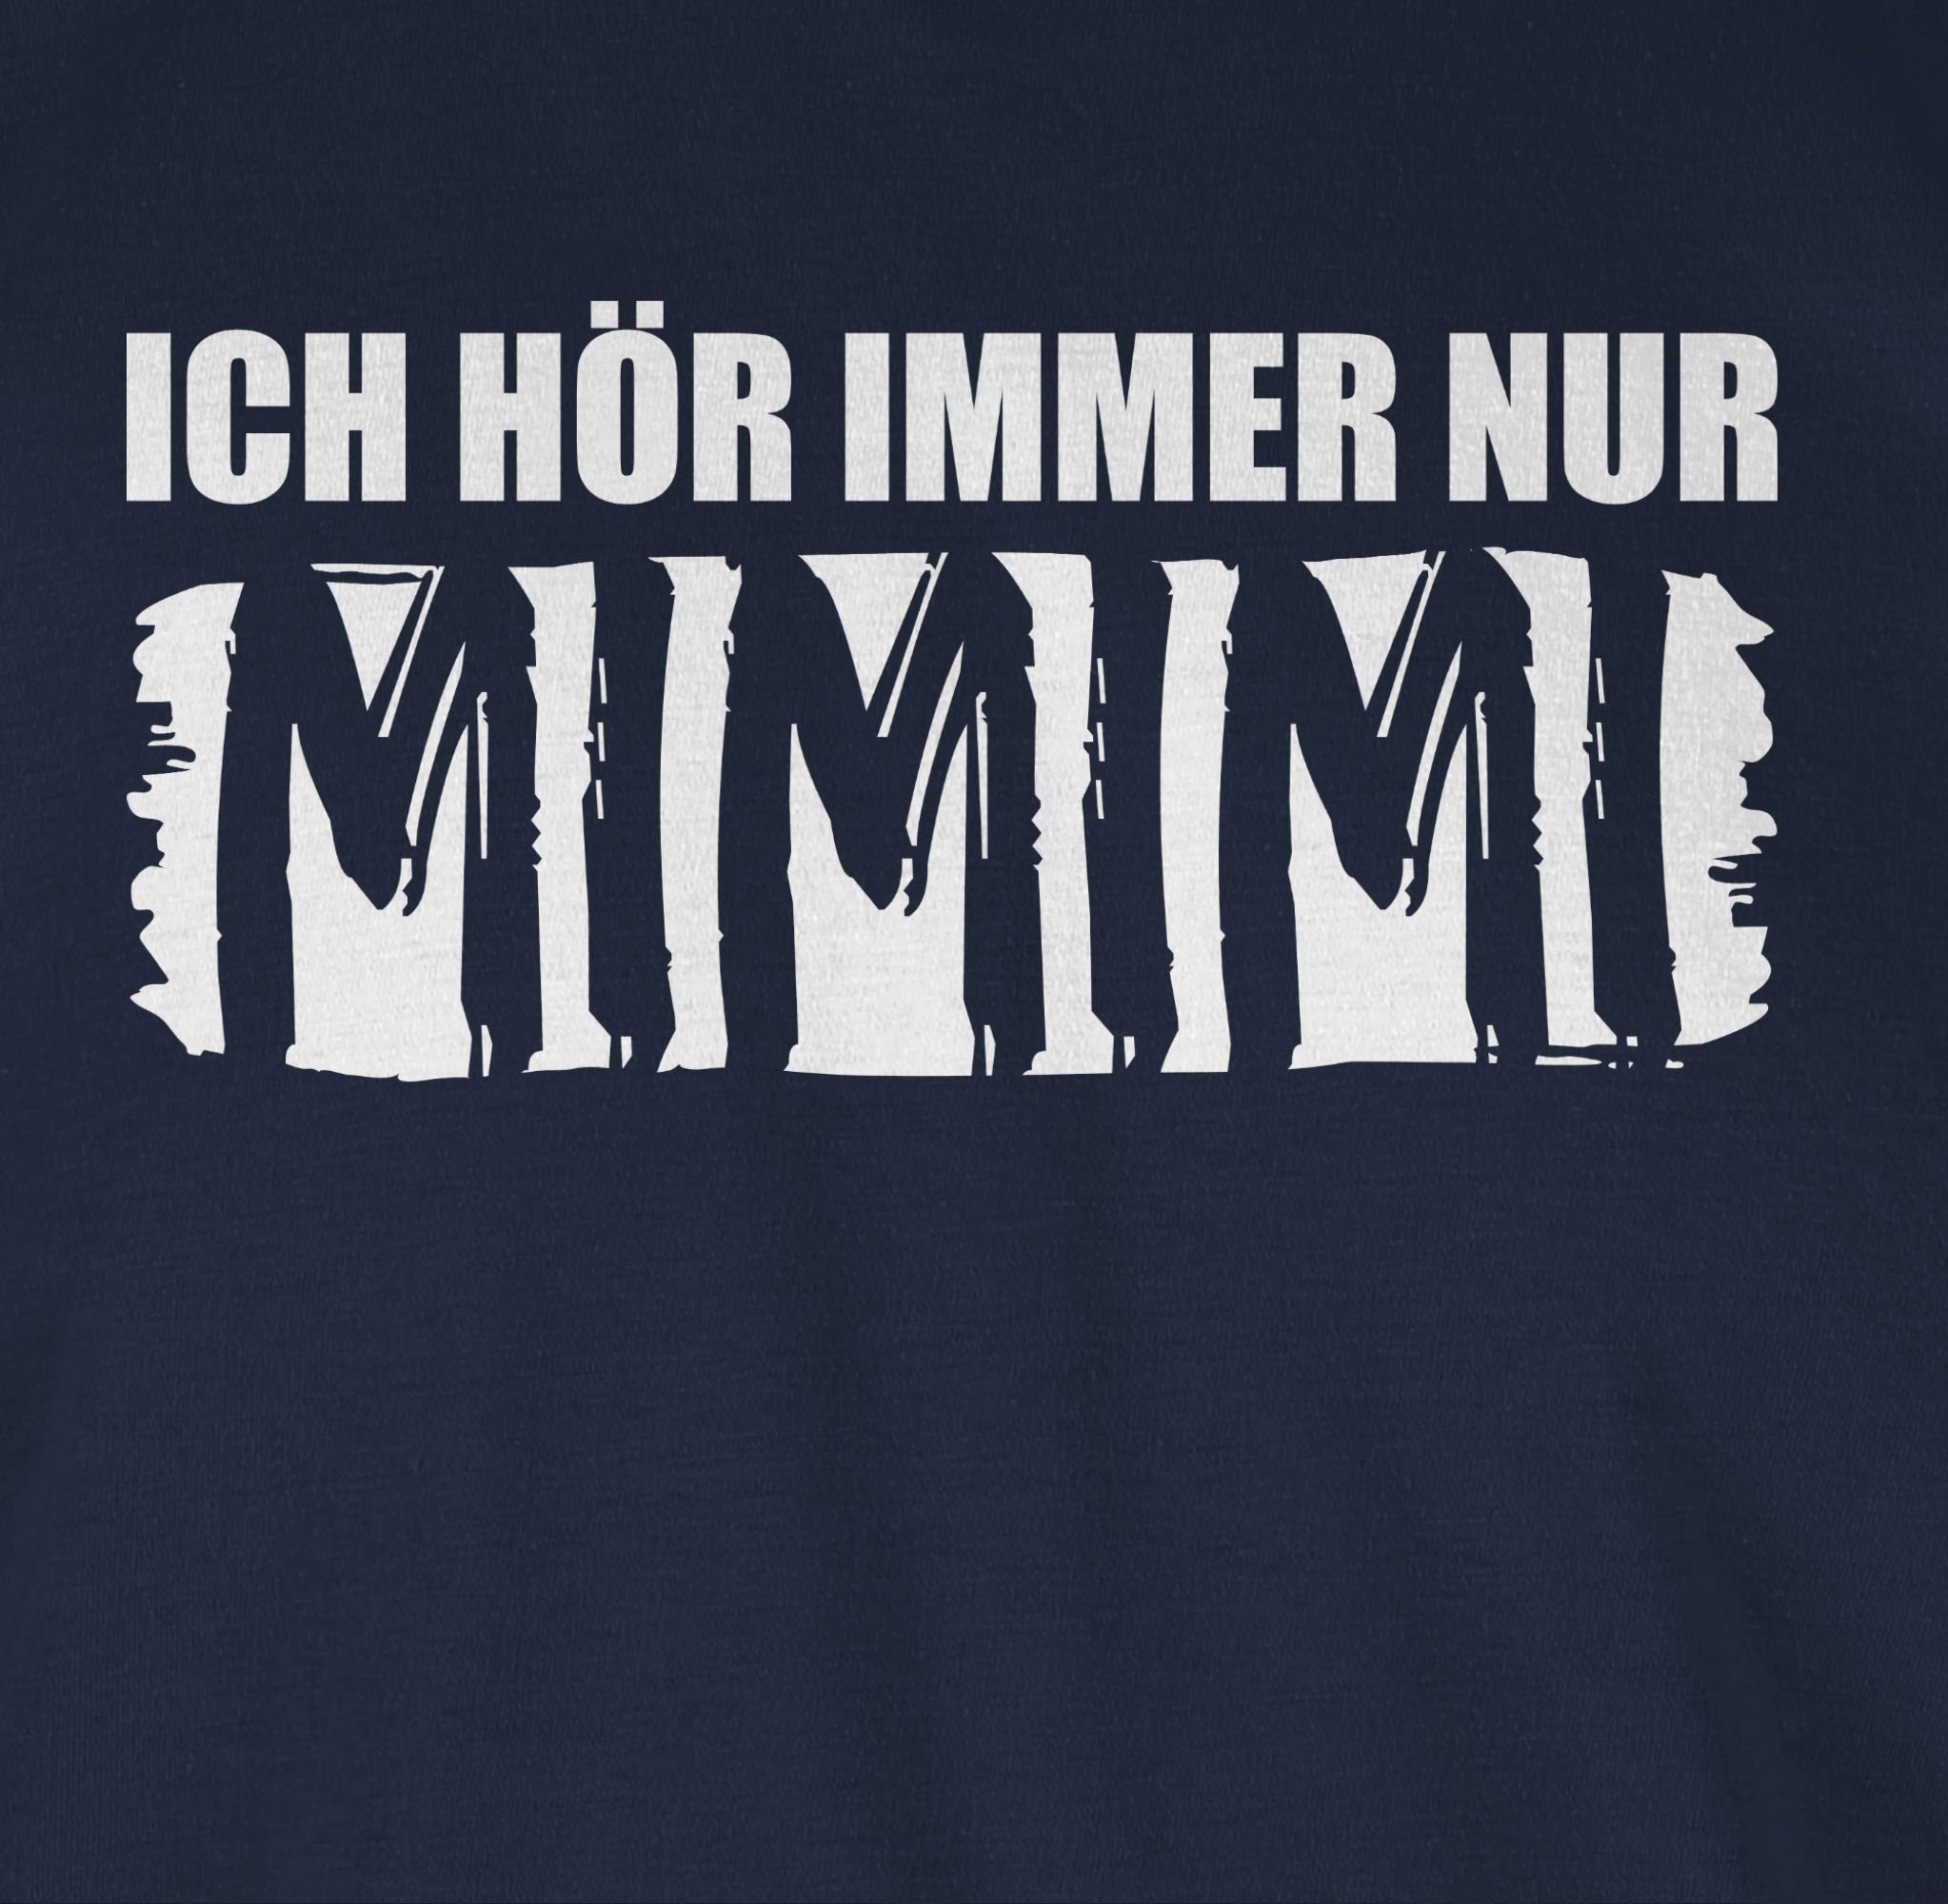 Navy T-Shirt mit Spruch nur Höre Statement MIMIMI Blau 02 Sprüche Shirtracer